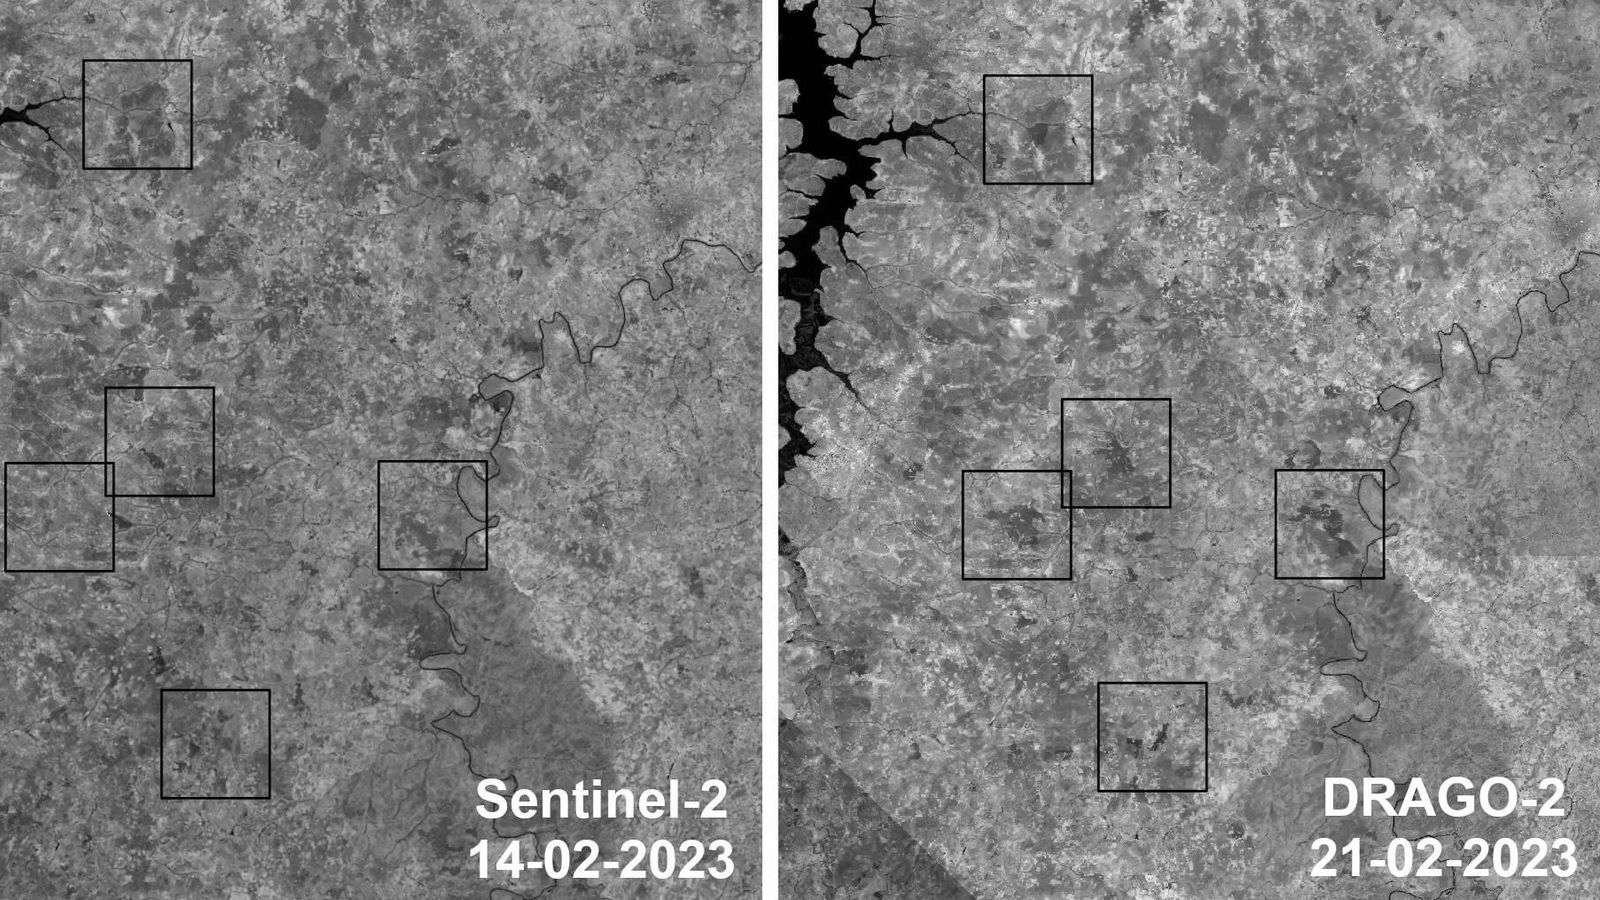 Comparación entre las imágenes de Sentinel-2 y DRAGO-2 que muestra la evolución de incendios y la generación de nuevos focos en Mali entre el 14 y el 21 de febrero de 2023. Los cuadrados marcan las zonas incendiadas. (IACTEC)